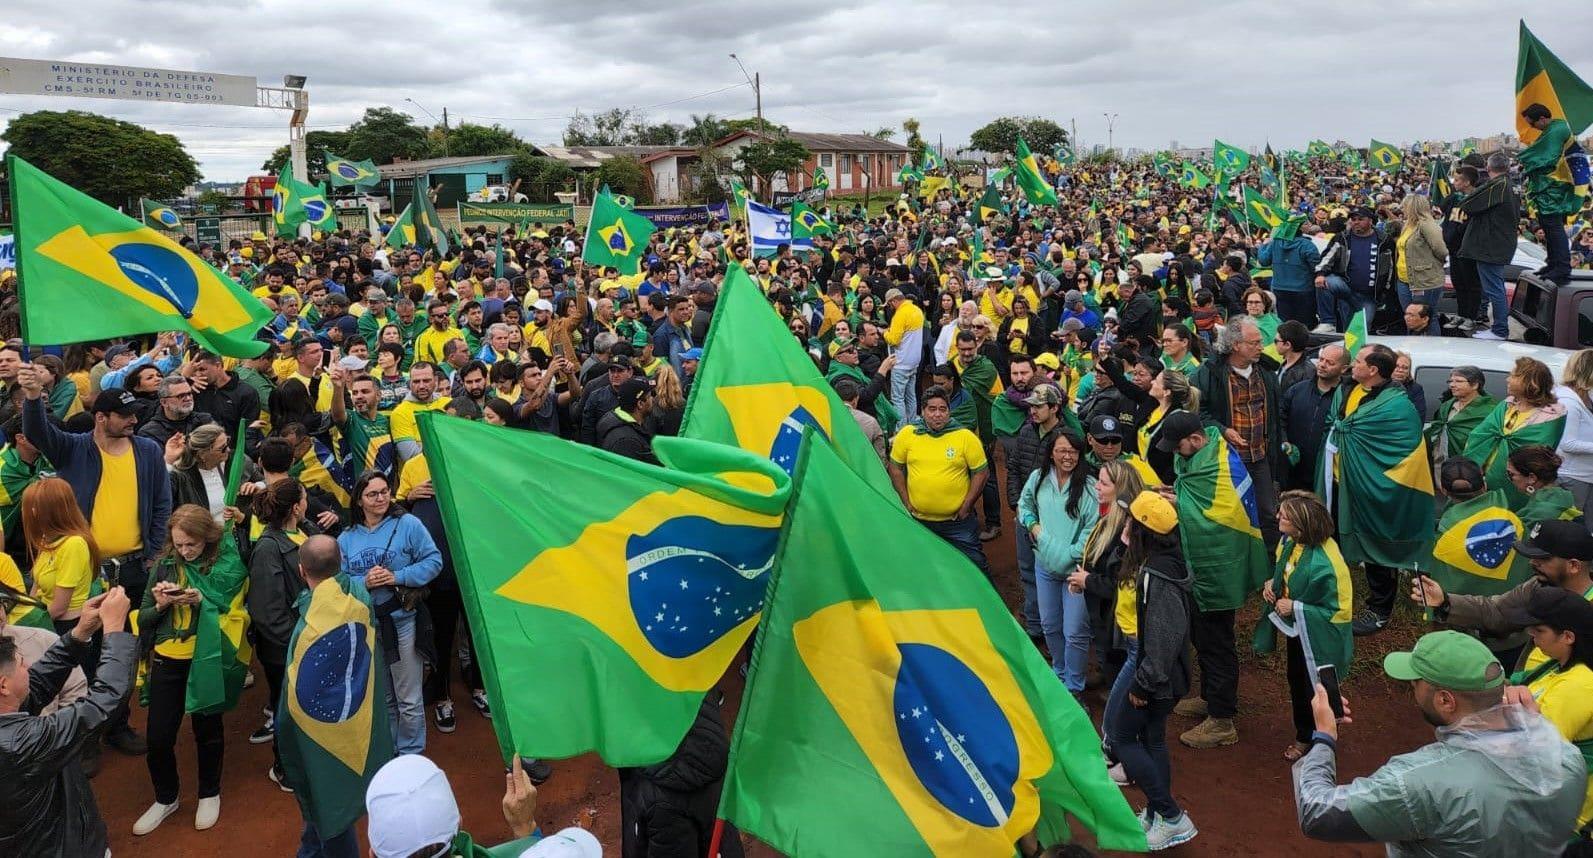 ‘Estamos aquí porque creemos en salvar a Brasil del socialismo’